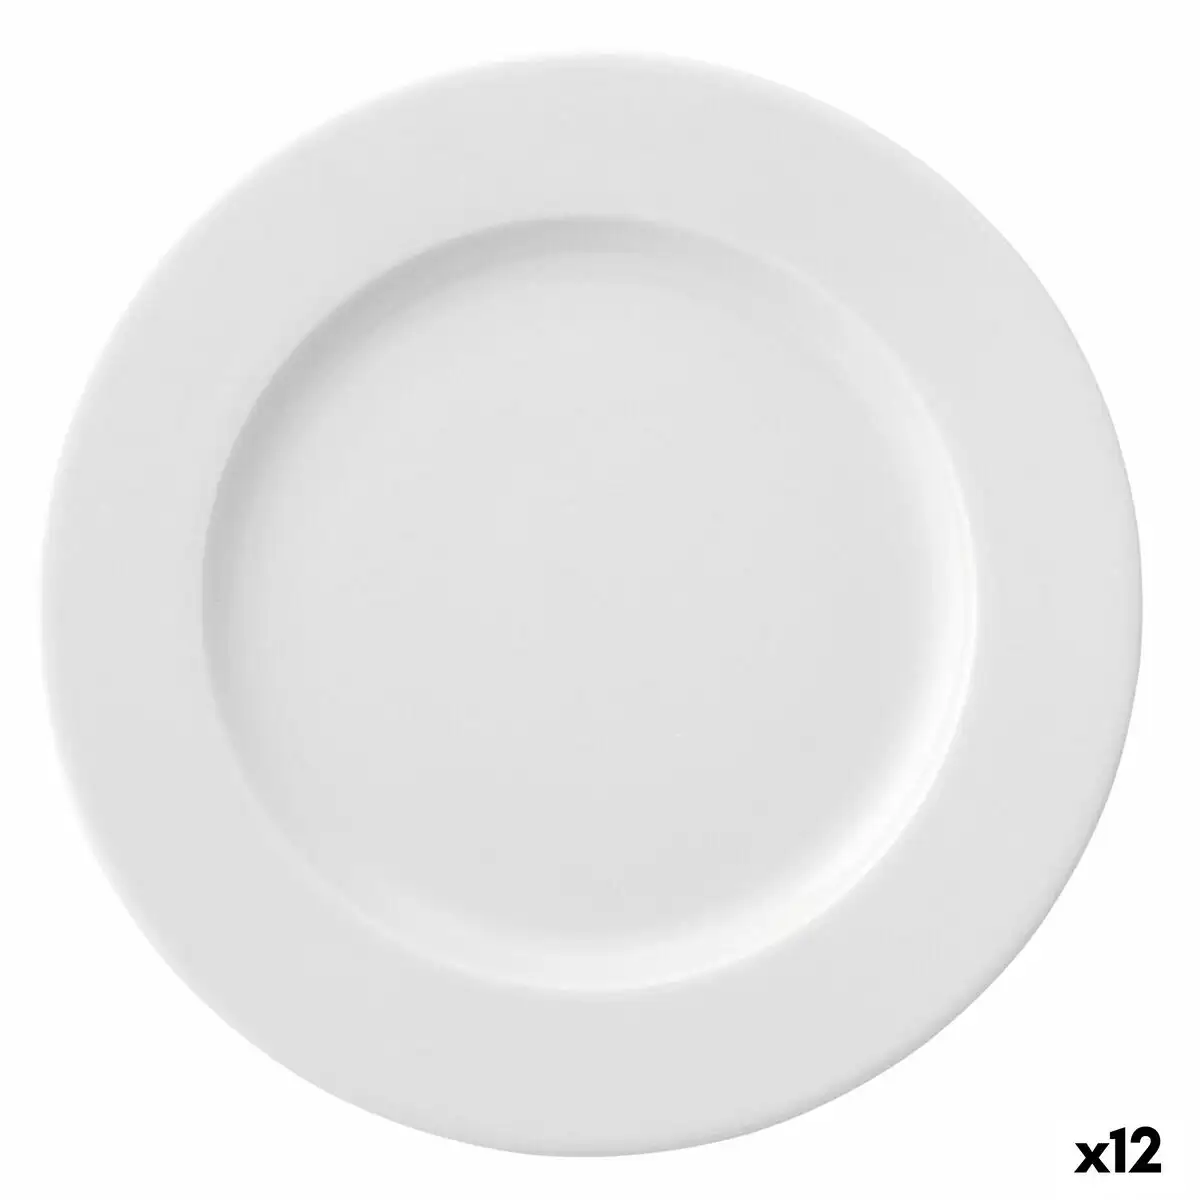 Assiette plate ariane prime ceramique blanc 24 cm 12 unites _2299. DIAYTAR SENEGAL - Où la Mode et le Confort se Rencontrent. Plongez dans notre univers de produits et trouvez des articles qui vous habillent avec style et aisance.